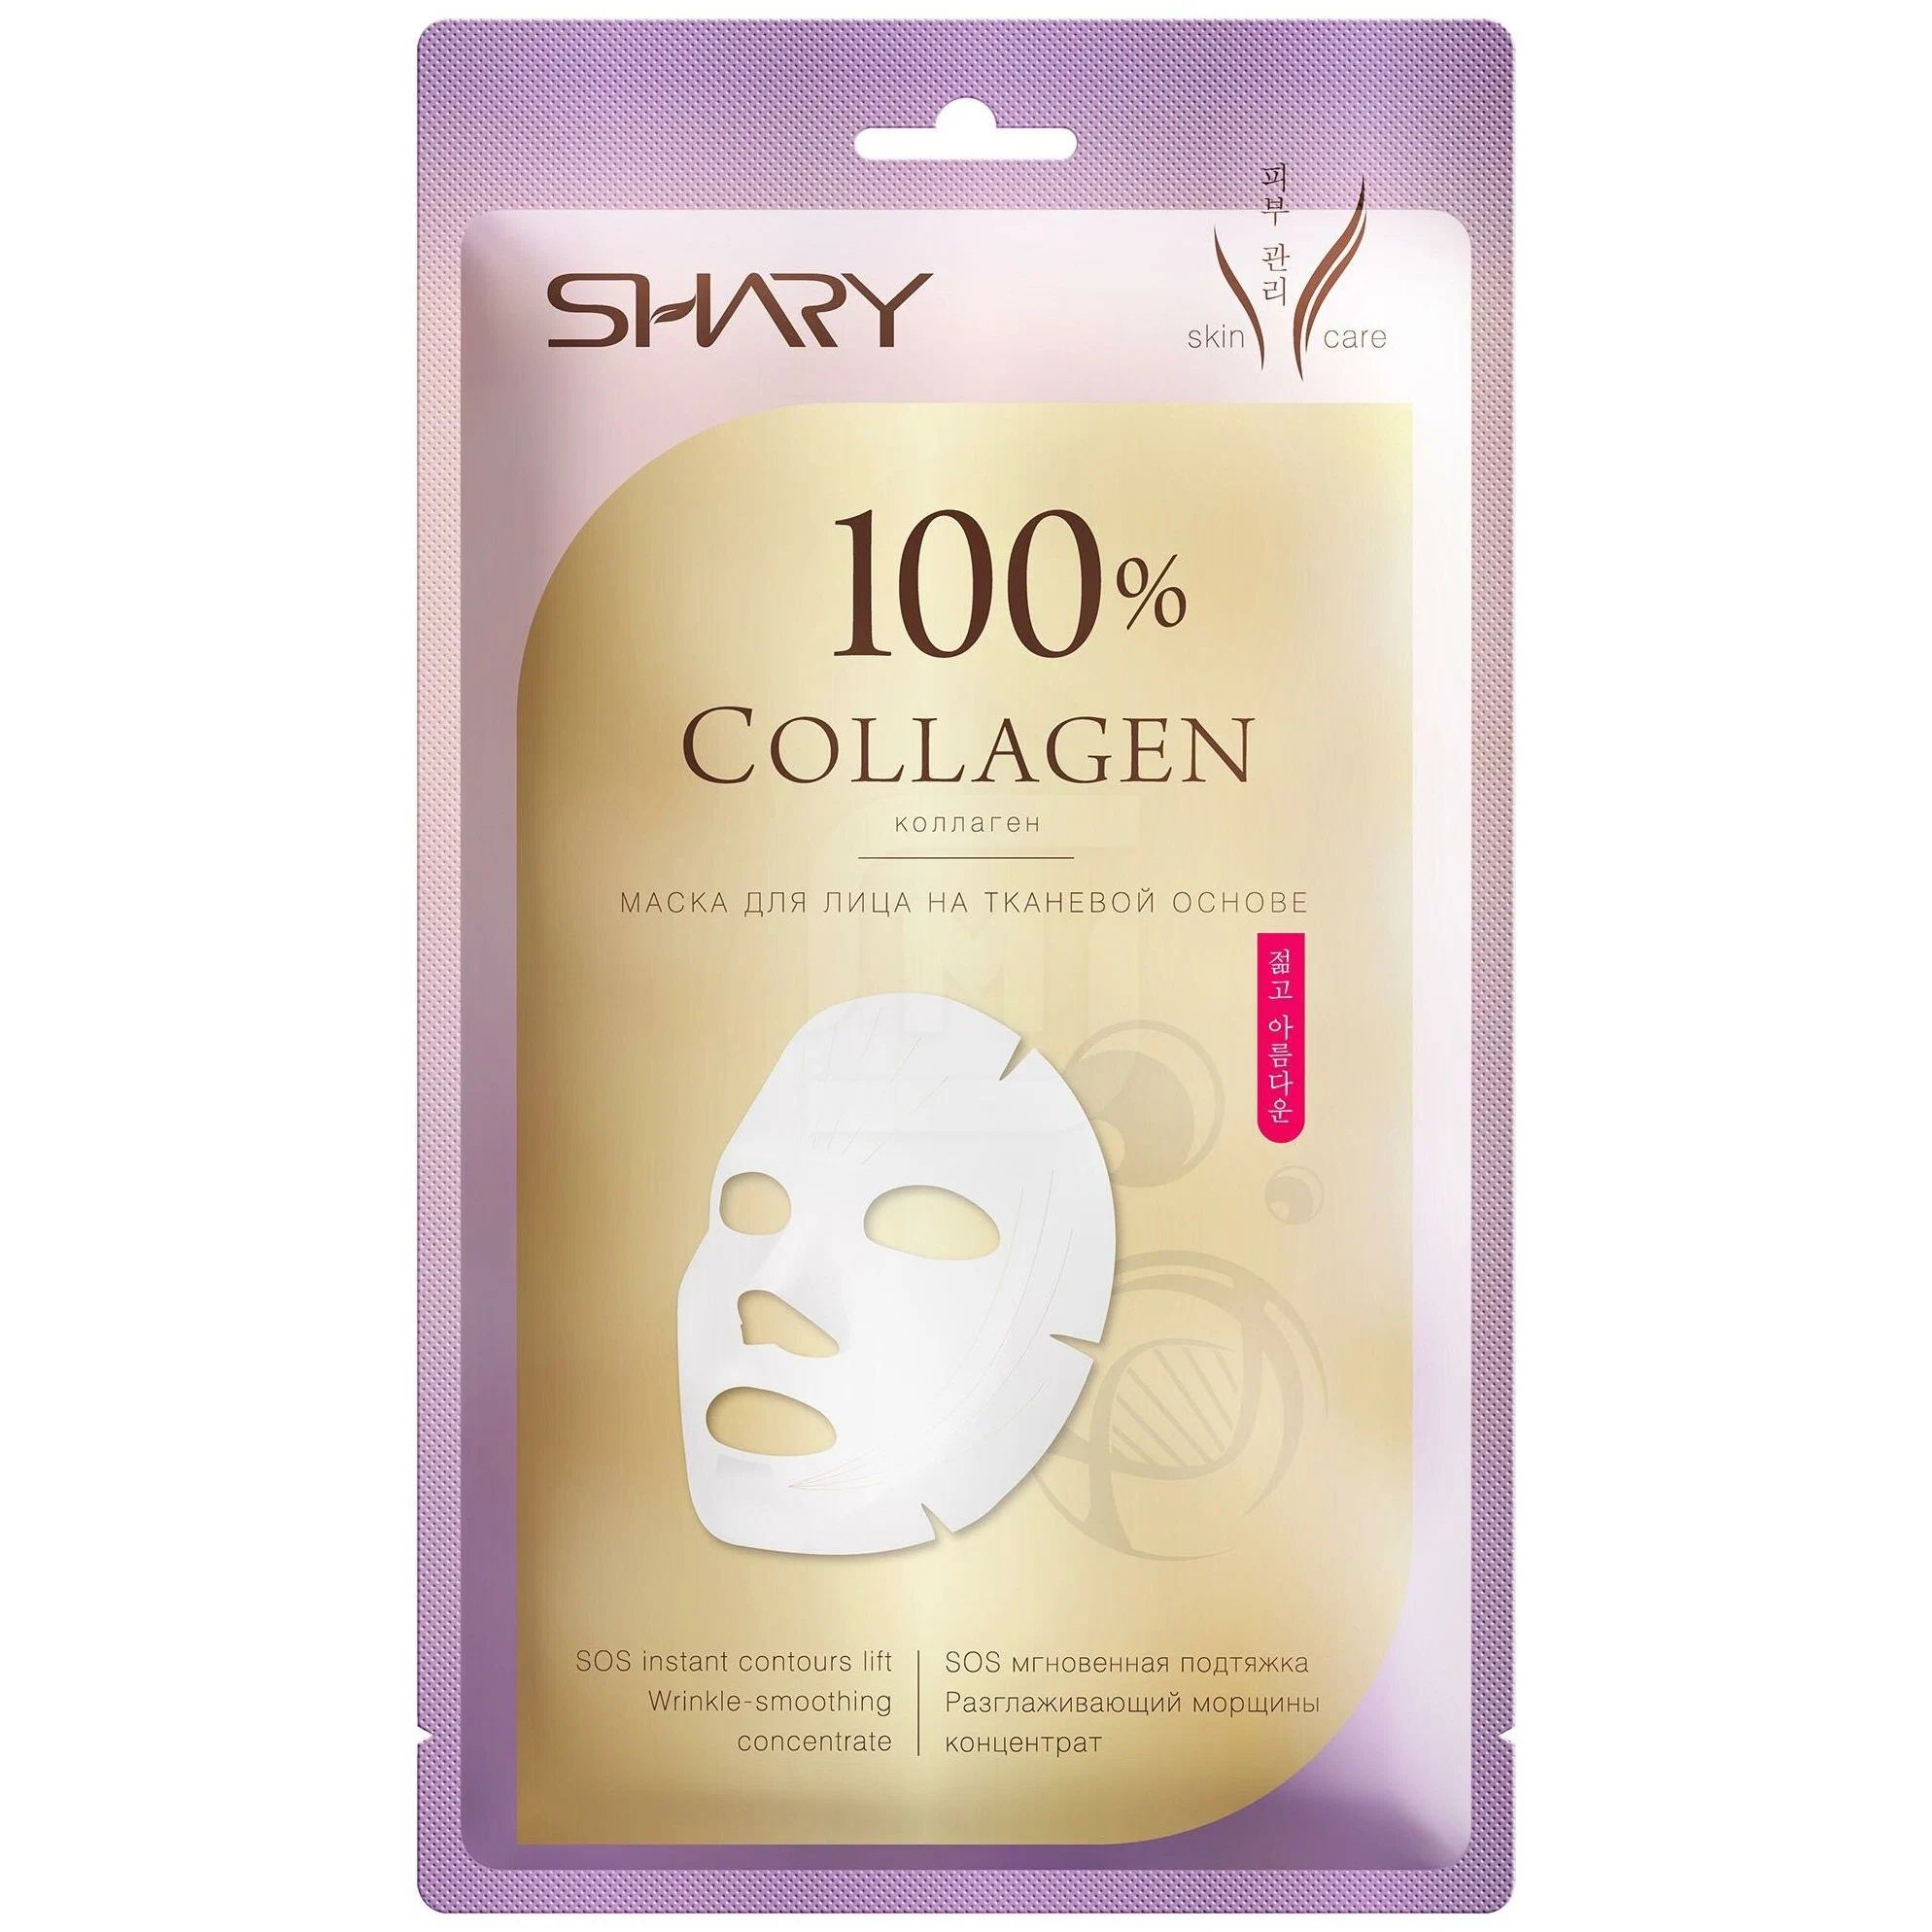 Маска для лица SHARY 100% Коллаген, на тканевой основе, 20 г маска для лица shary 100% коллаген на тканевой основе 20 г